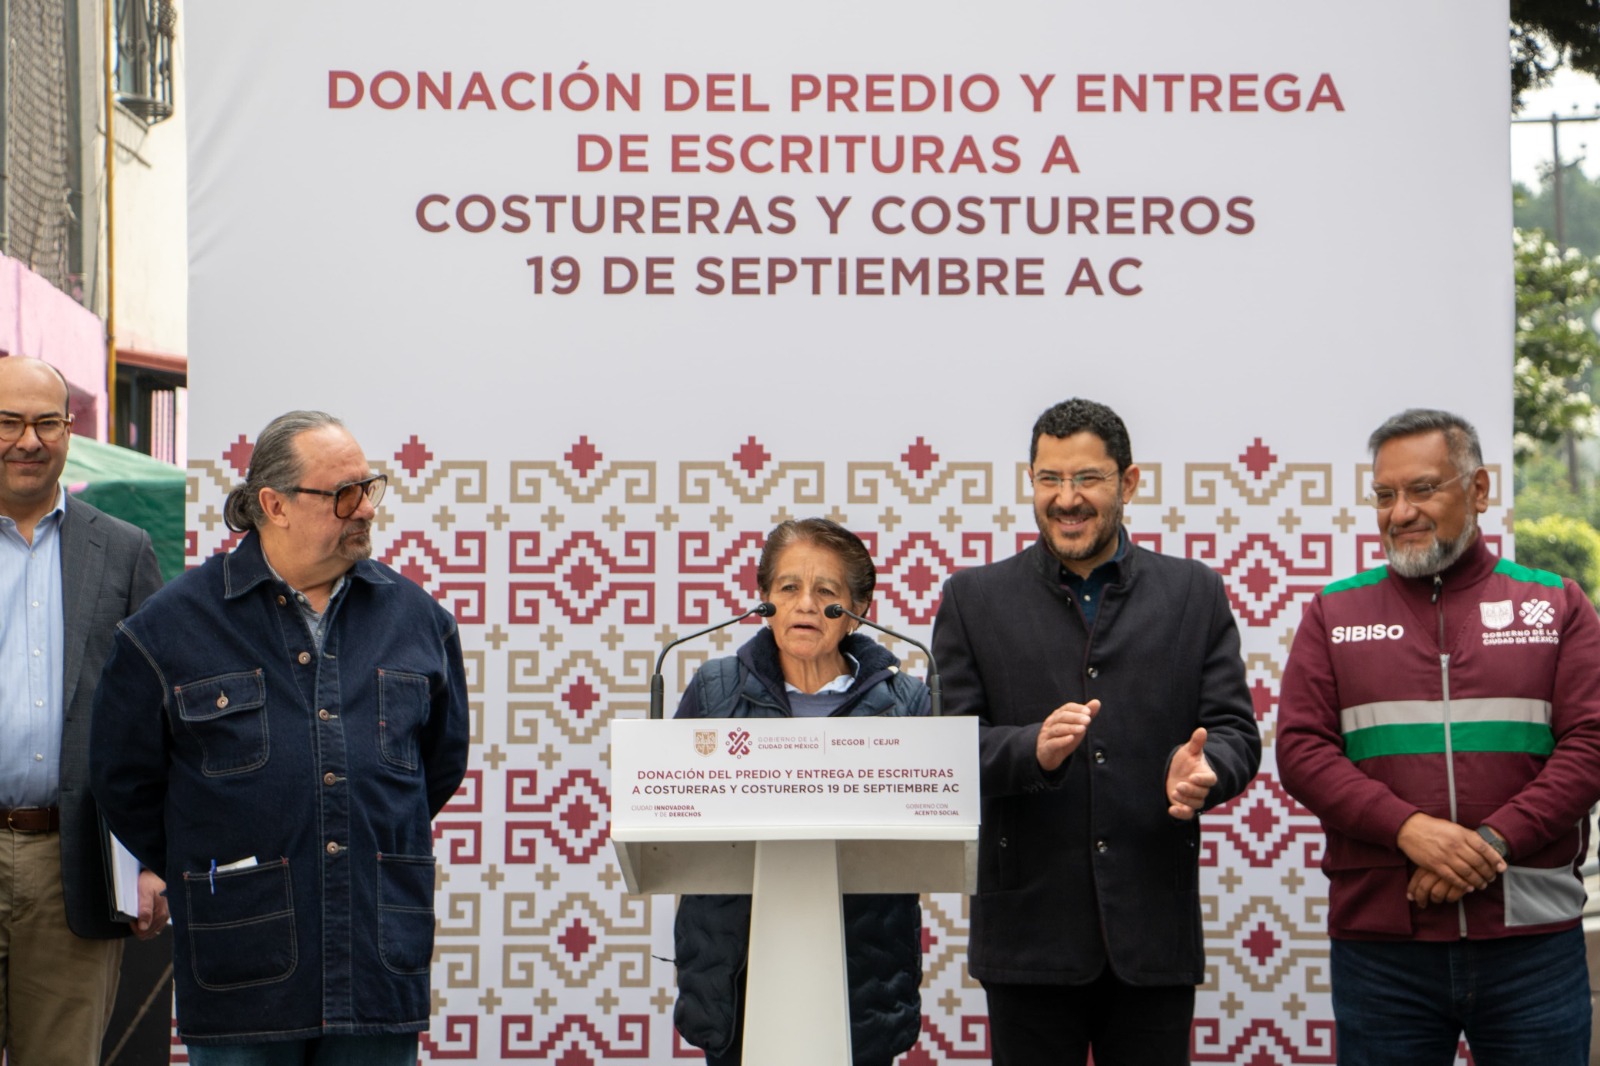 El Gobierno de la Ciudad de México dona predio a la Asociación “Costureras y Costureros 19 de septiembre A.C.